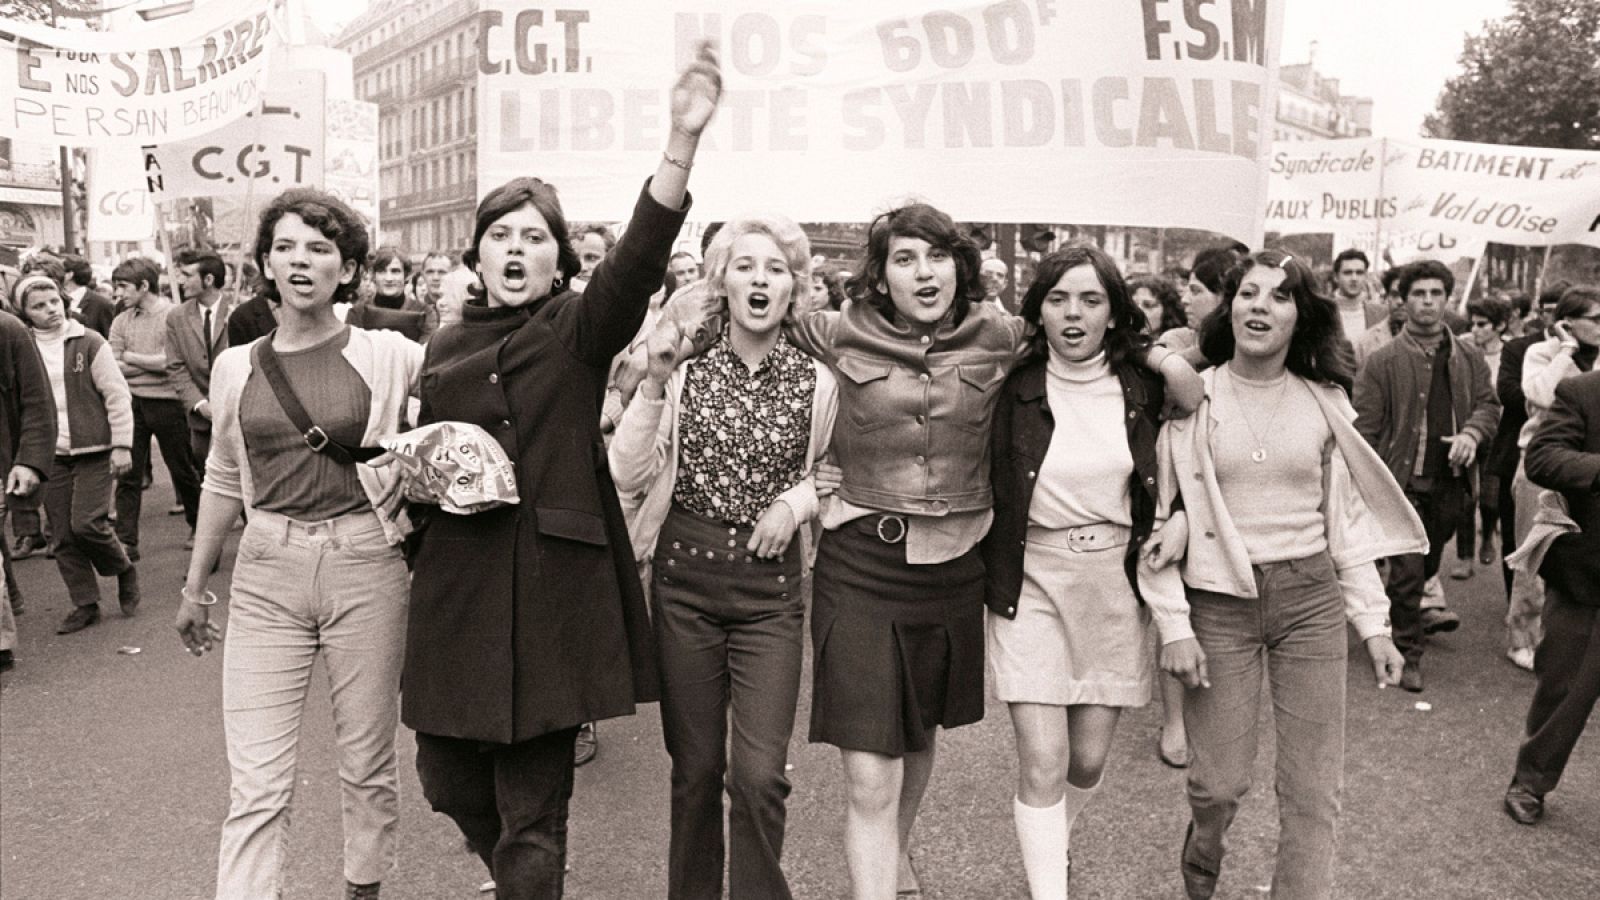 Fotografía de las protestas de Mayo del 68 facilitada por la Fundación Gilles Caron con el título "Manifestation CGT"